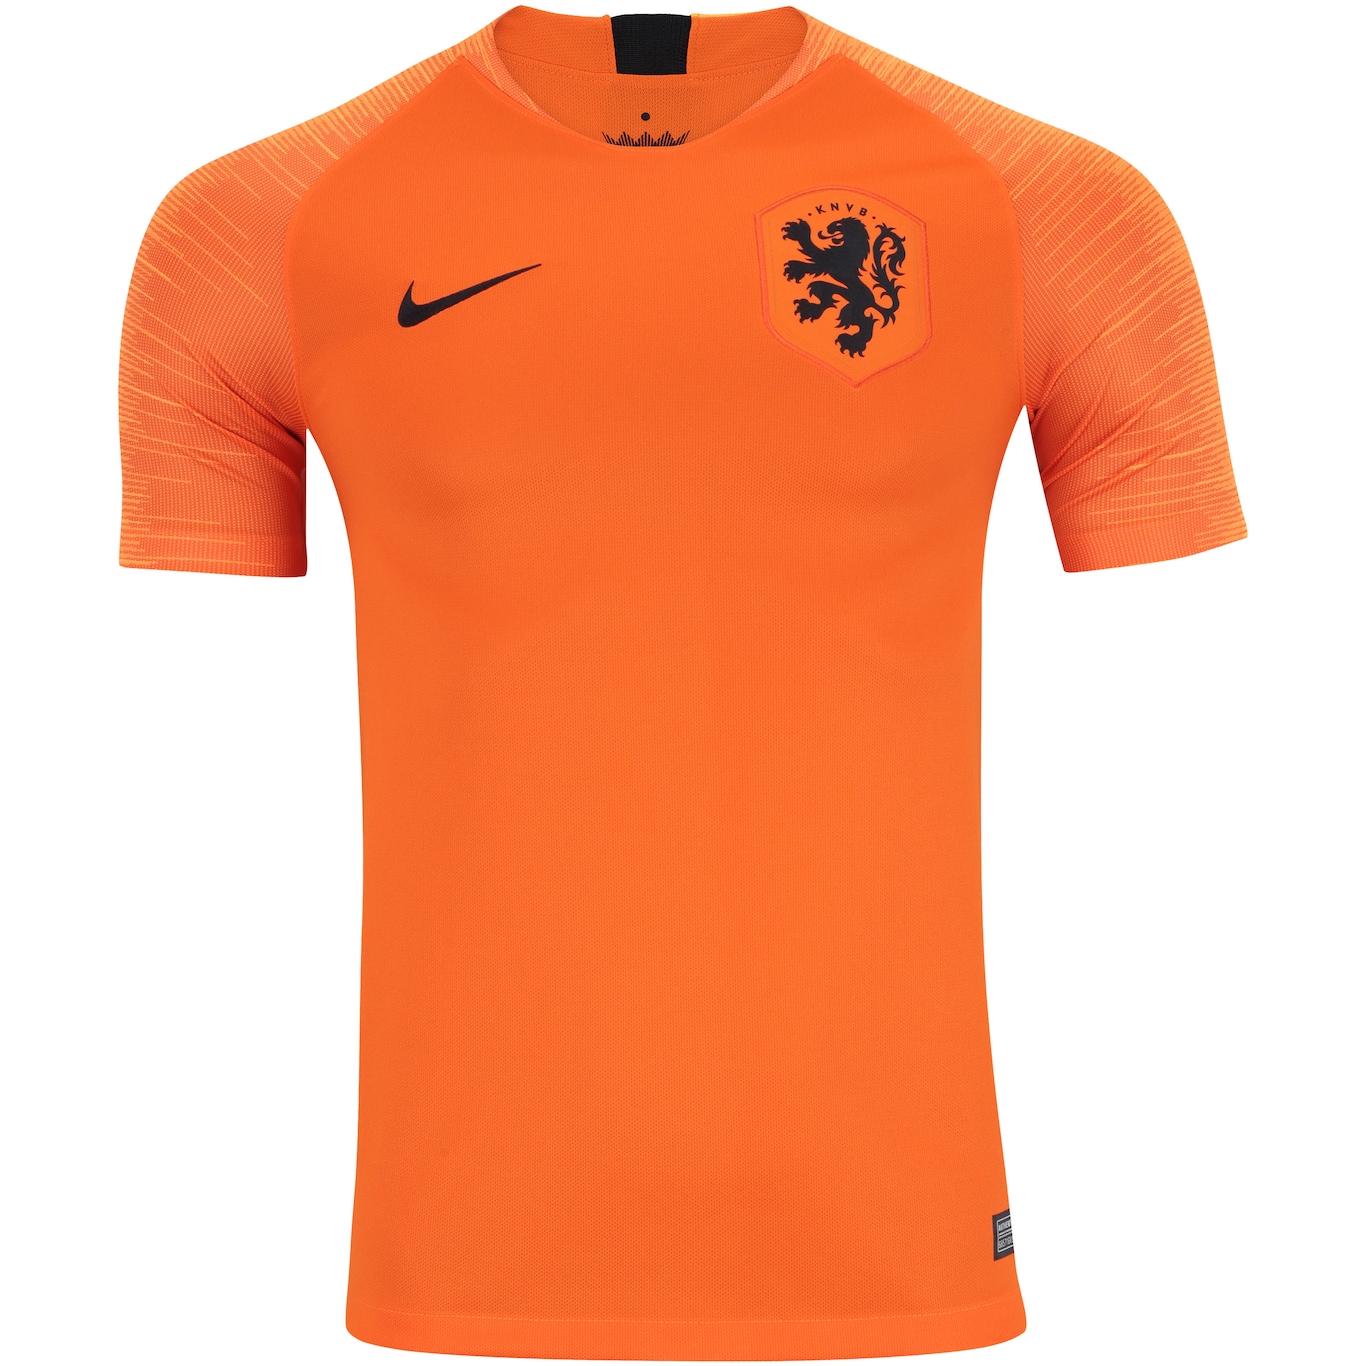 Camisa Holanda 2018 Nike - Masculina | Centauro